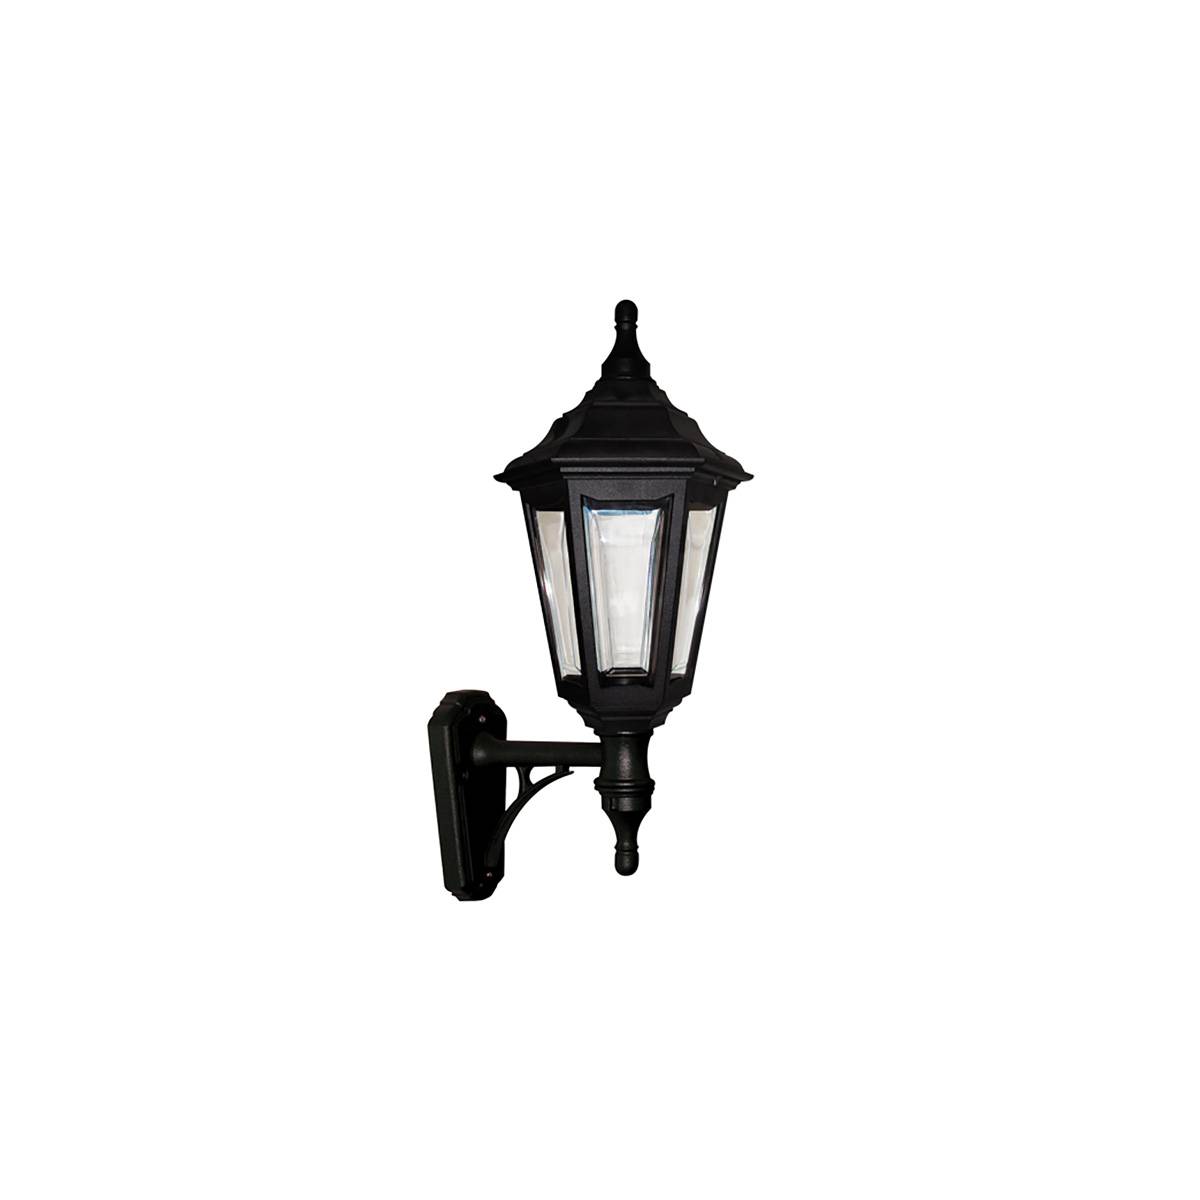 Настенный фонарь KINSALE-WALL, Настенные фонари Классический | Поликарбонат Поликарбонатное стекло | Графит/Черный Прозрачный | Уличный свет.